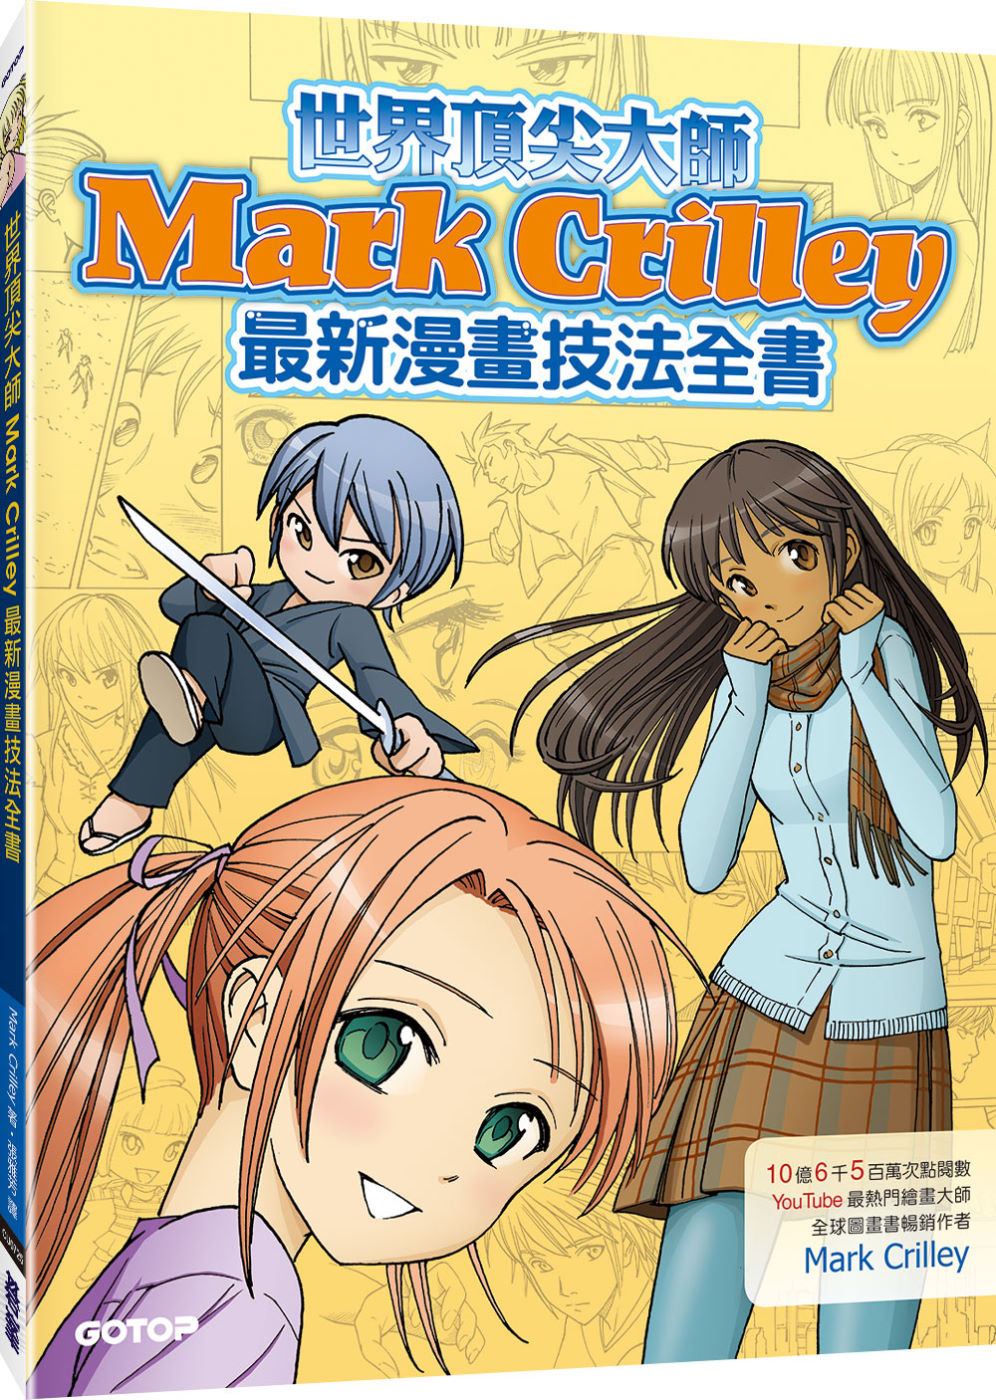 世界頂尖大師Mark Crilley最新漫畫技法全書(10億6千5百萬次點閱YouTube最熱門繪畫達人暢銷力作)